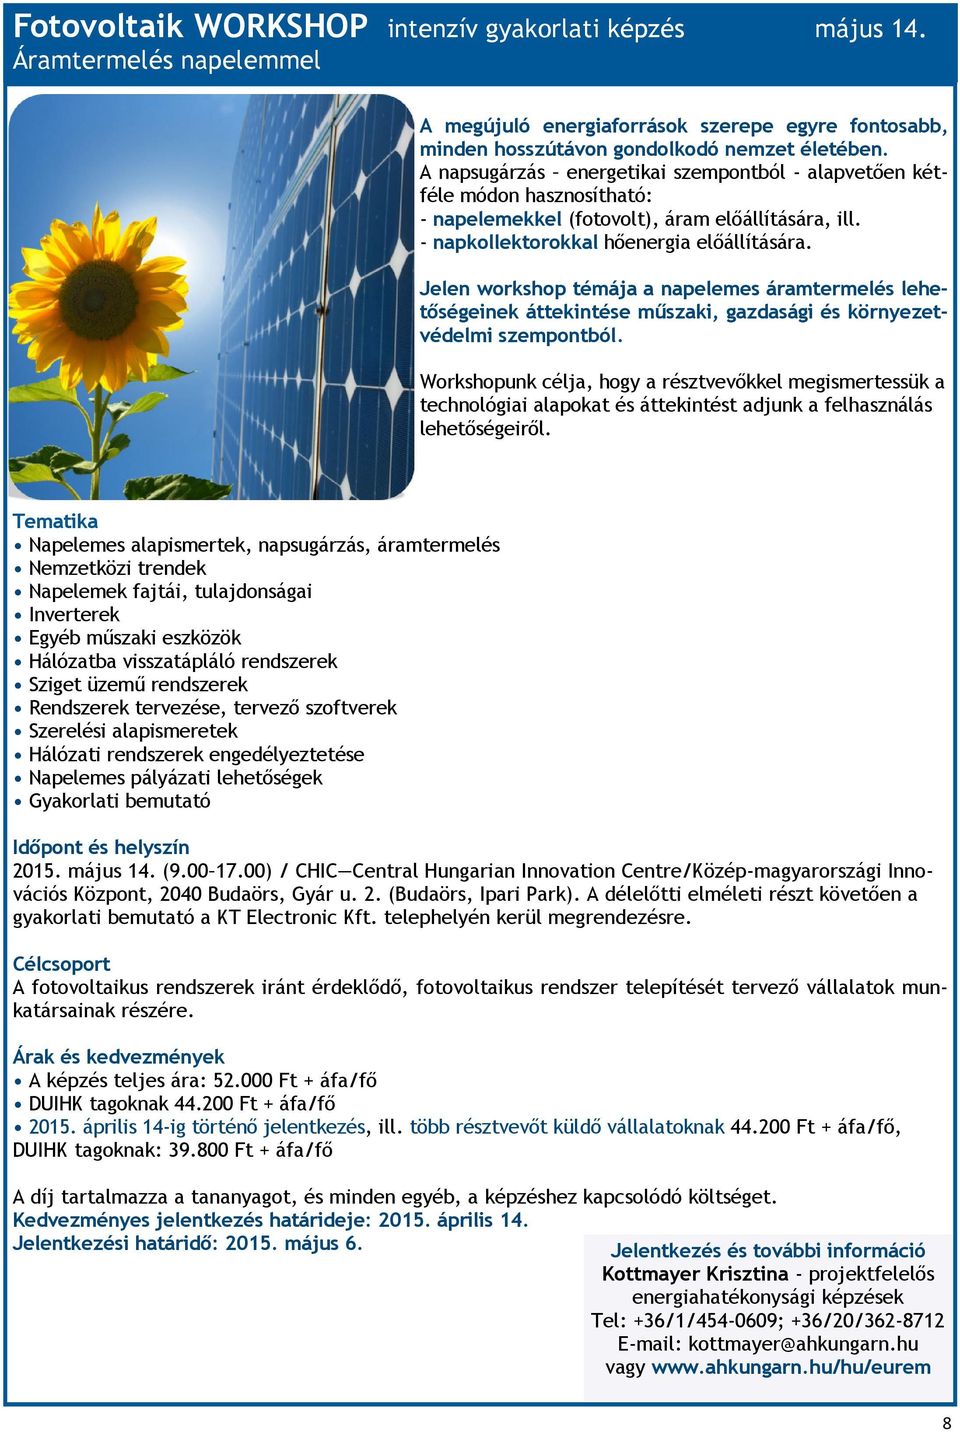 Jelen workshop témája a napelemes áramtermelés lehetőségeinek áttekintése műszaki, gazdasági és környezetvédelmi szempontból.